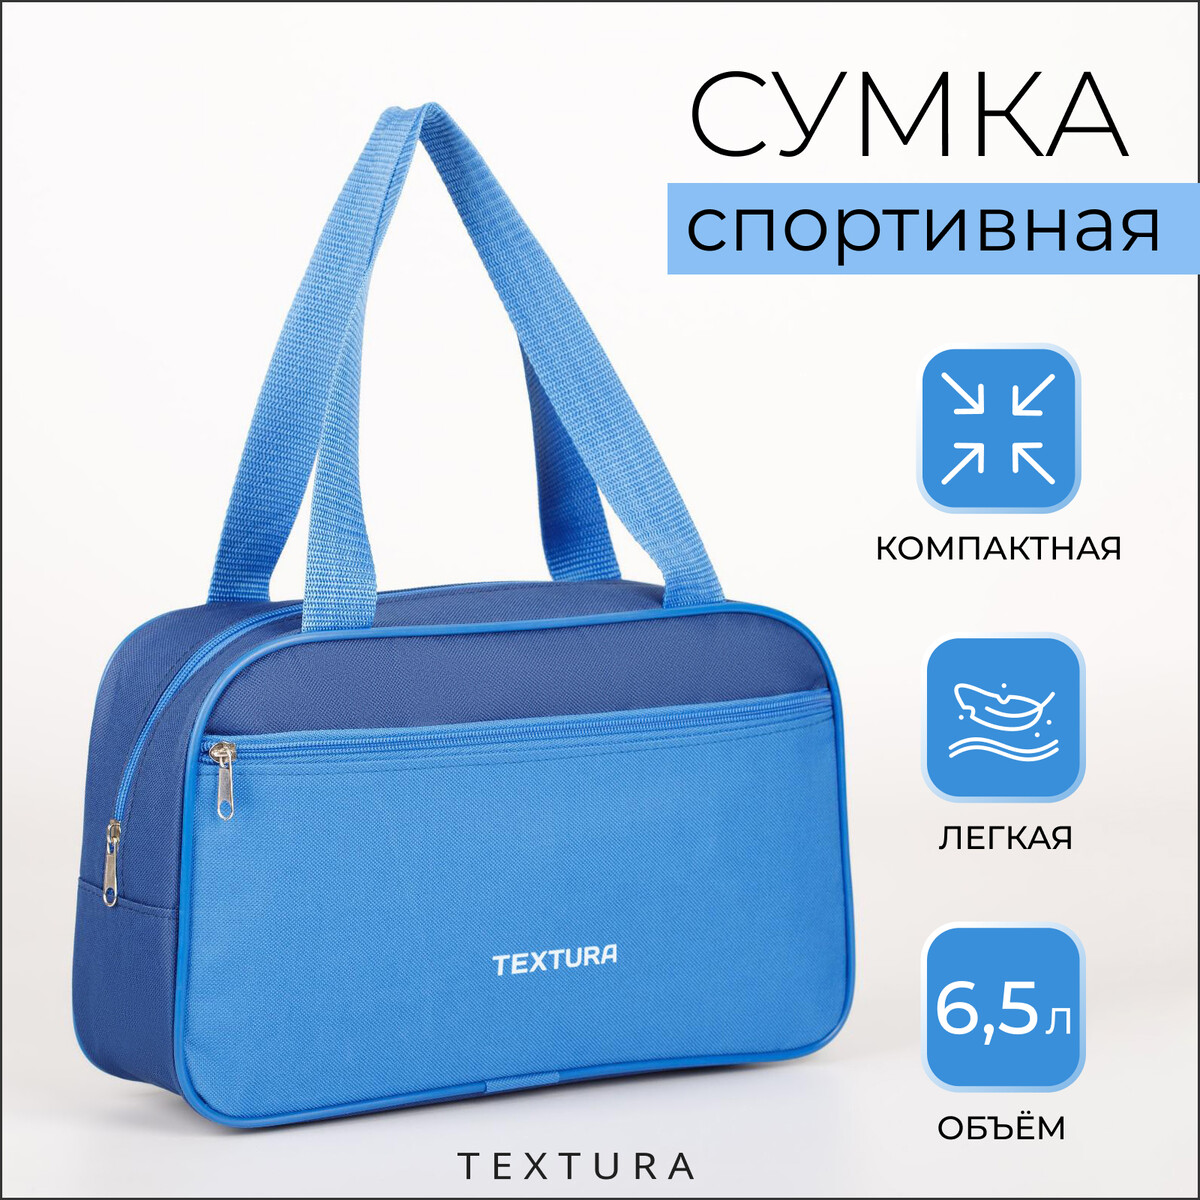 Сумка для обуви на молнии, наружный карман, textura, цвет синий/голубой сумка спортивная на молнии наружный карман держатель для чемодана синий